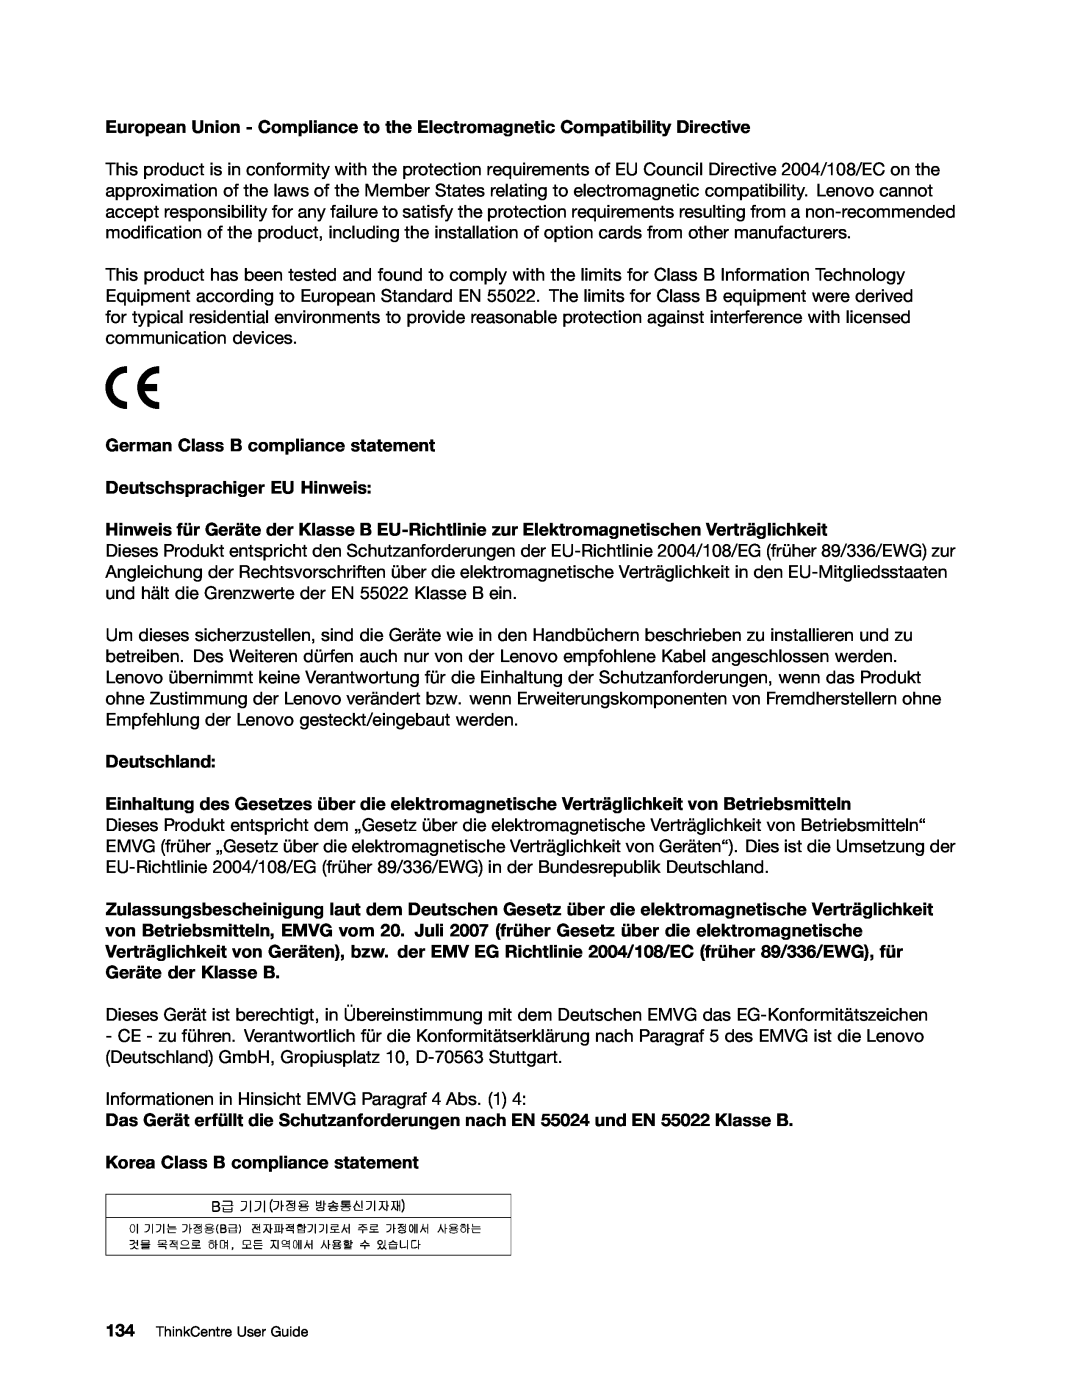 Lenovo 2756D7U, 2697 manual German Class B compliance statement Deutschsprachiger EU Hinweis, Deutschland 